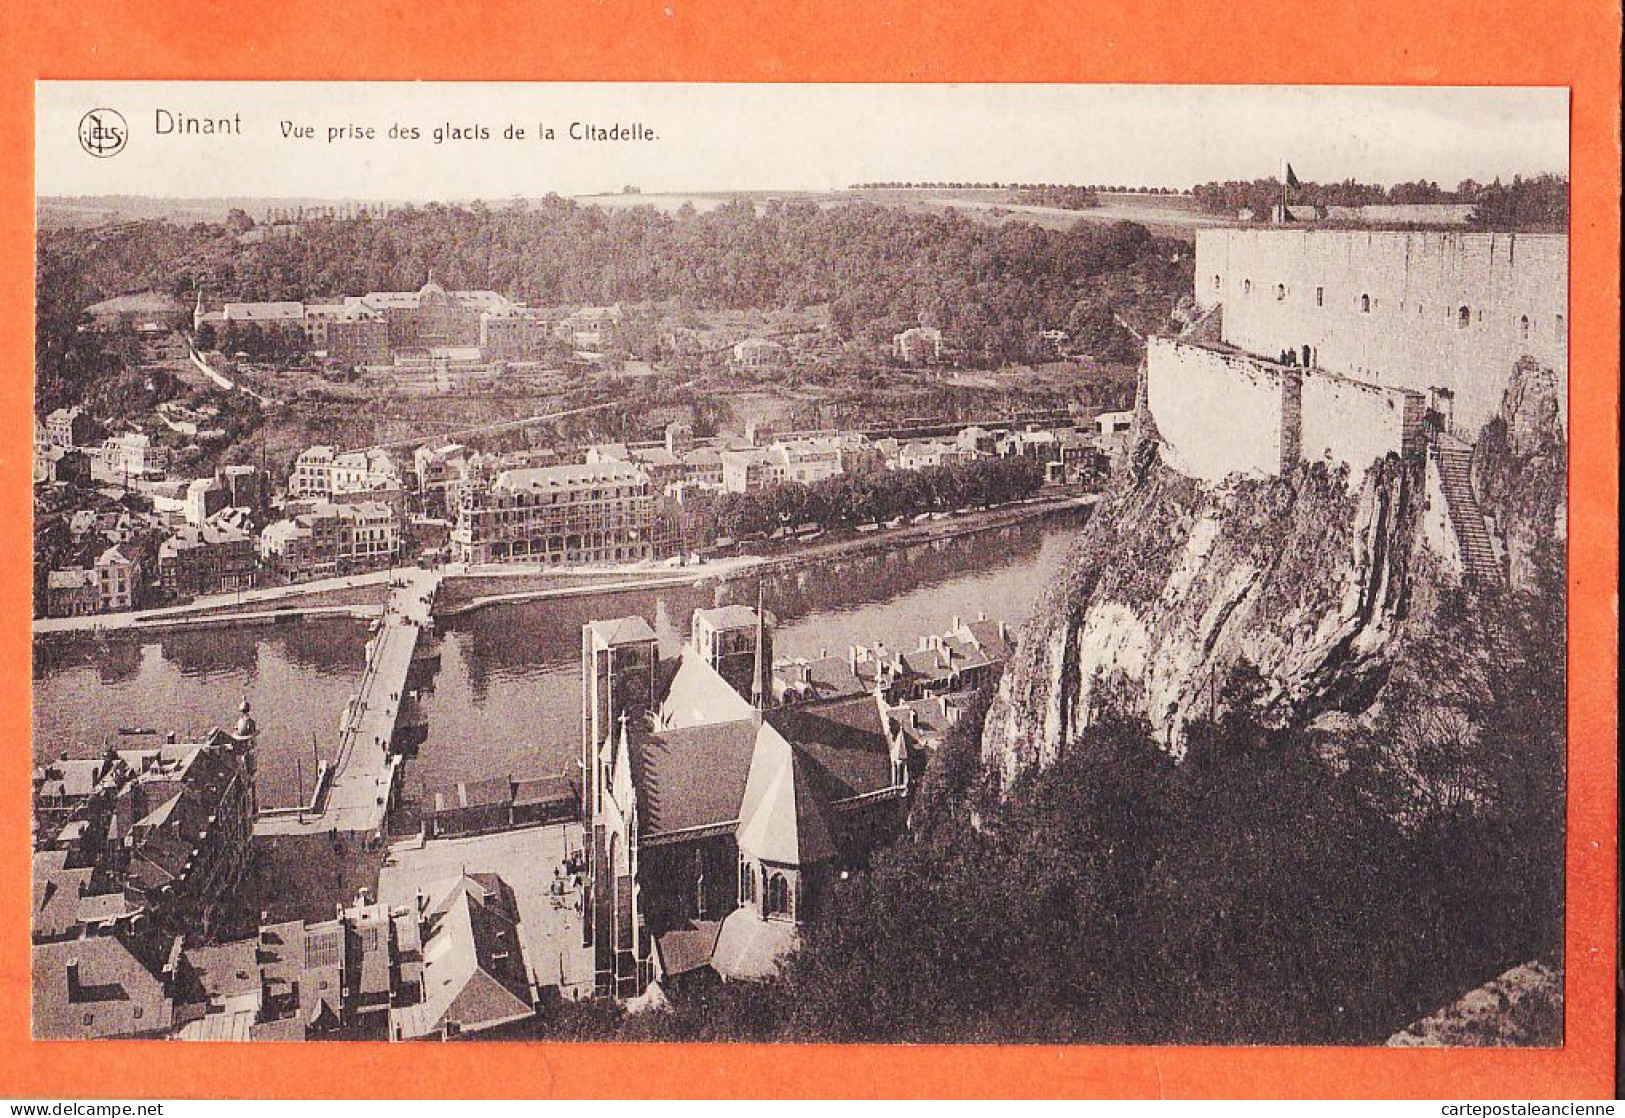 09508 /⭐ ◉  DINANT Namur Vue Prise Des Glacis De La Citadelle 1910s ● Ern THILL Bruxelles NELS  - Dinant